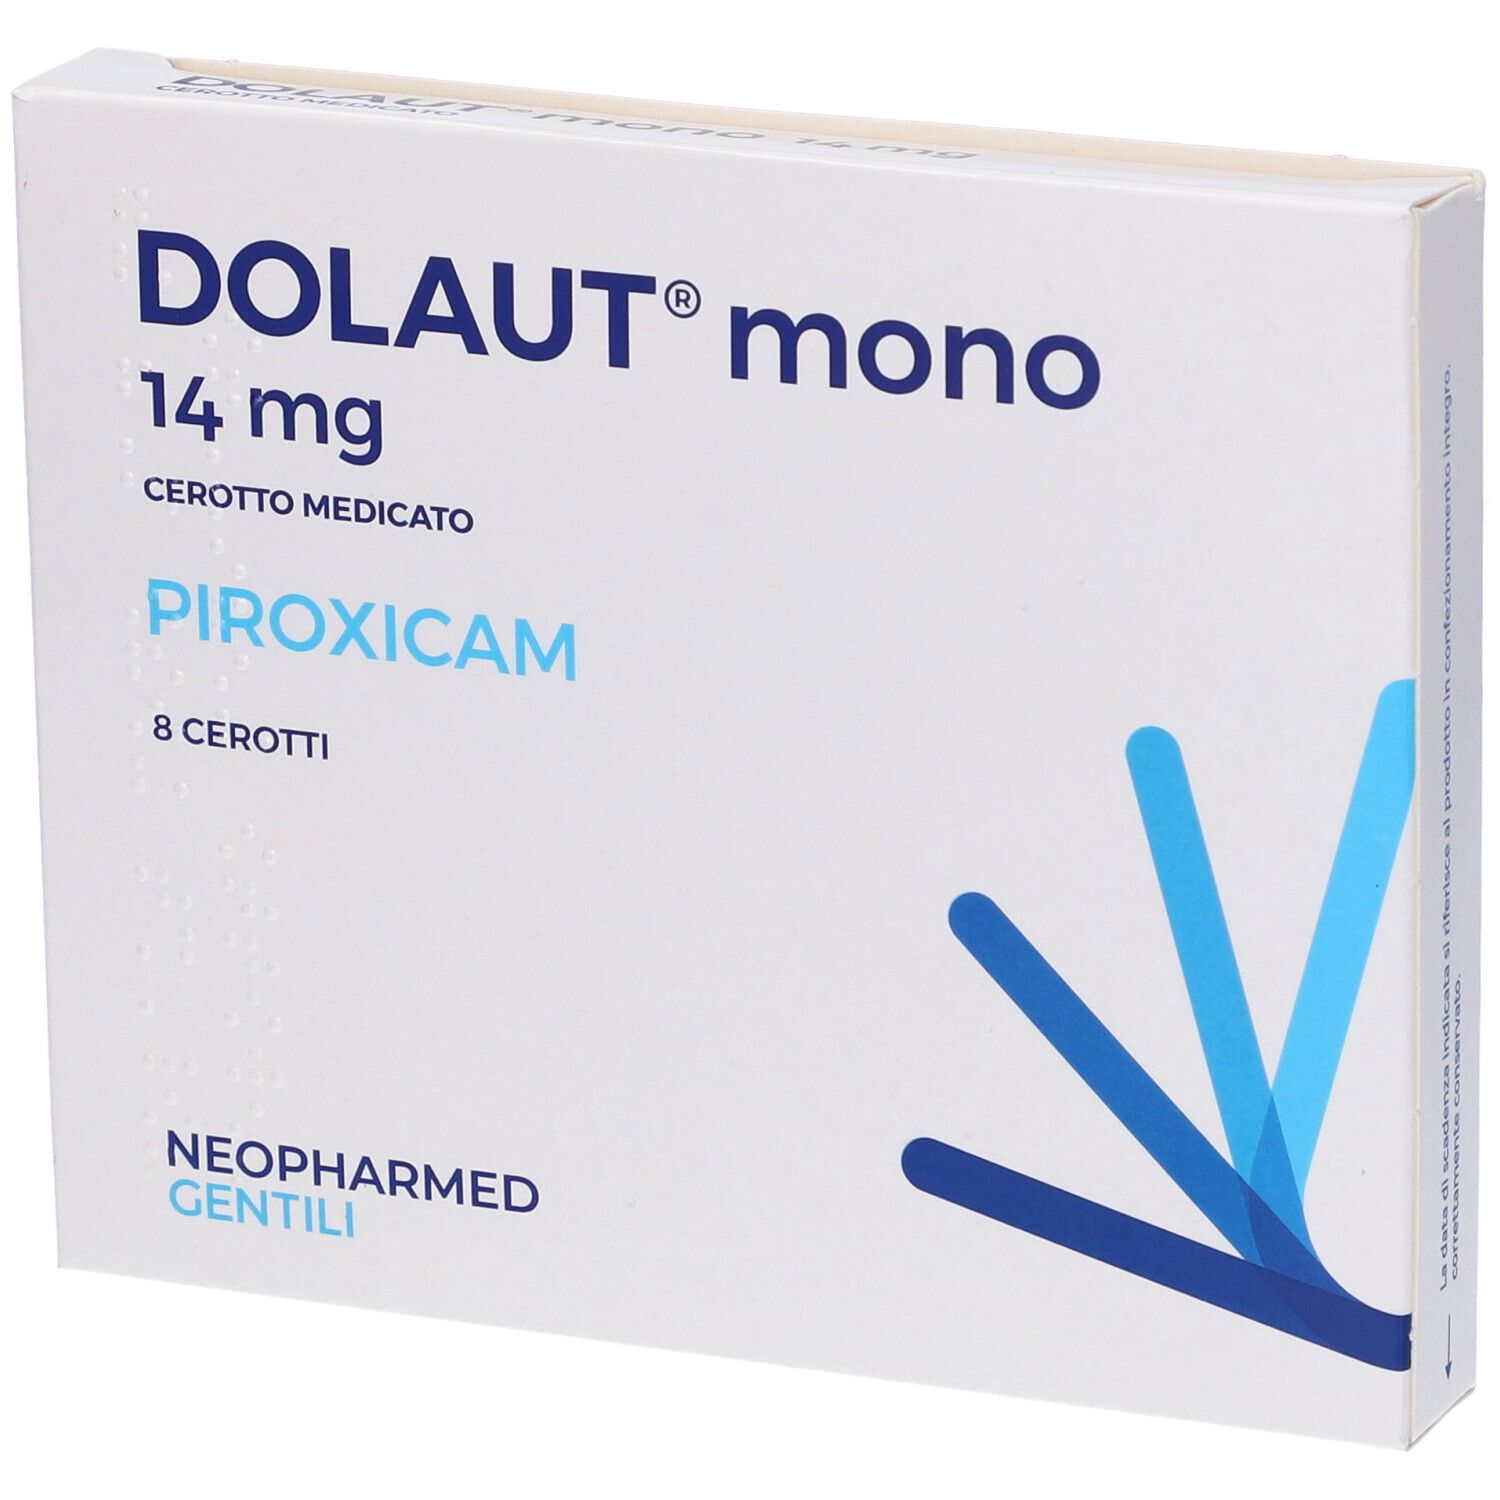 DOLAUT mono 14 mg